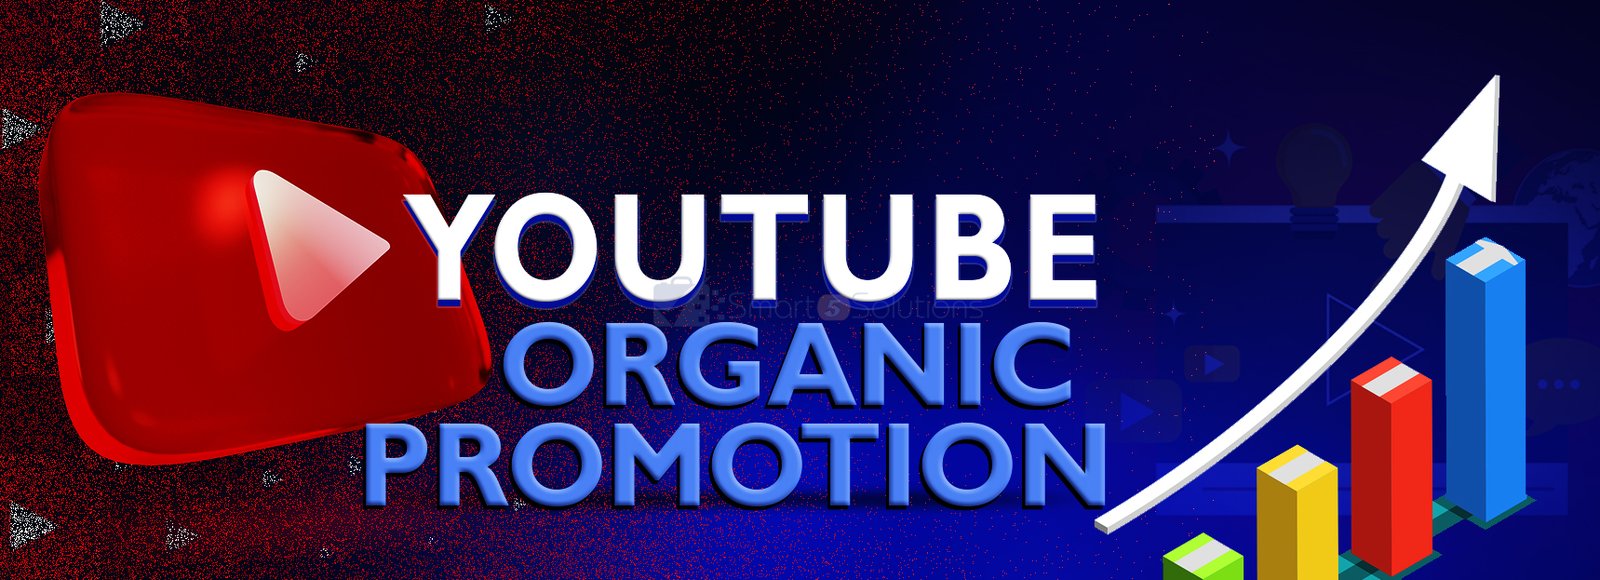 Youtube Organic Promotion